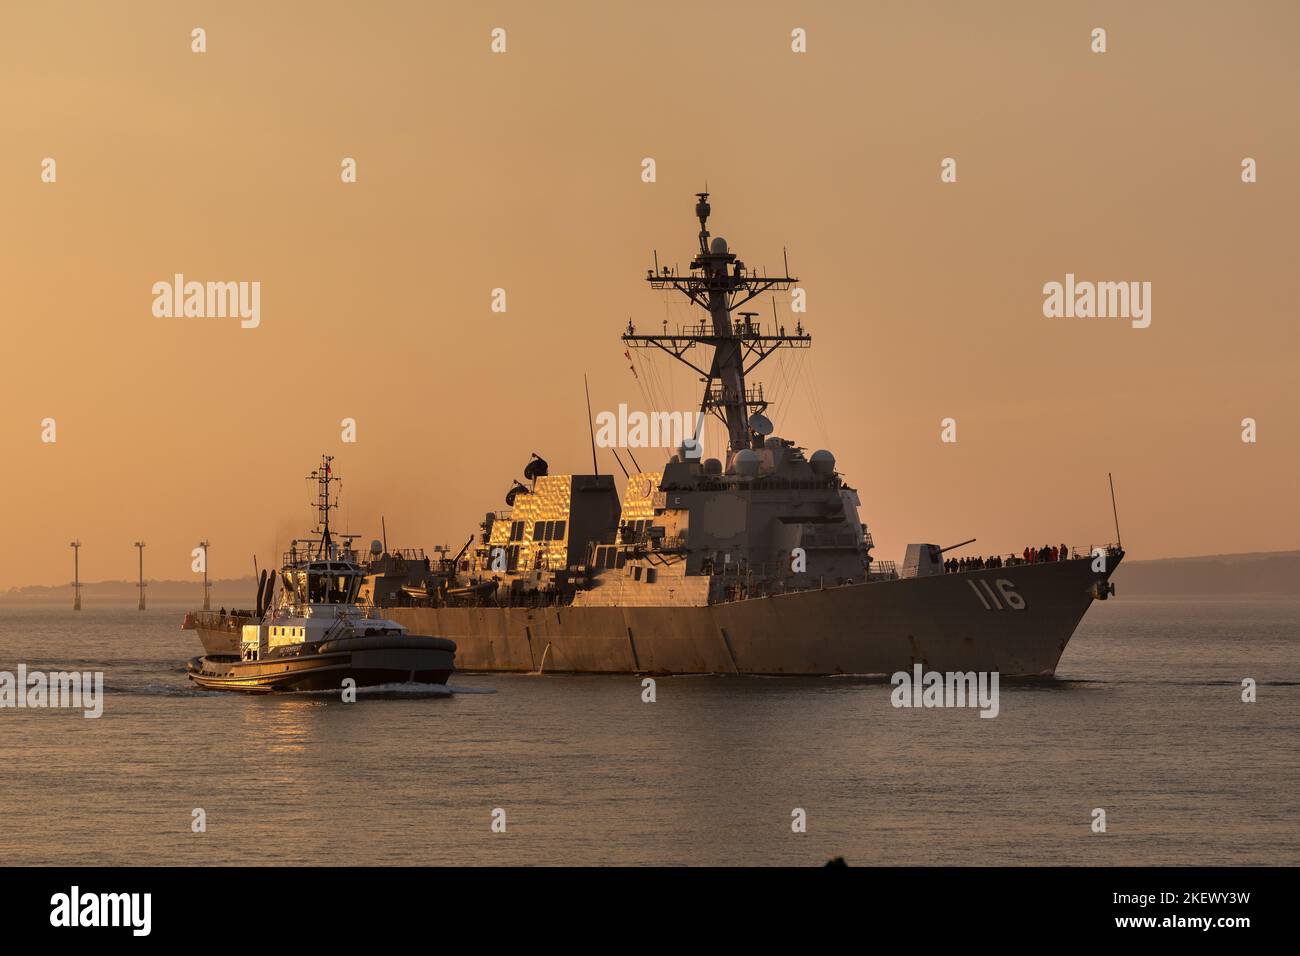 USS Thomas Hudner 116 un destroyer de la marine américaine arrivant à Portsmouth en début de matinée. Illuminé par le soleil du matin avec le ciel orange derrière. Banque D'Images